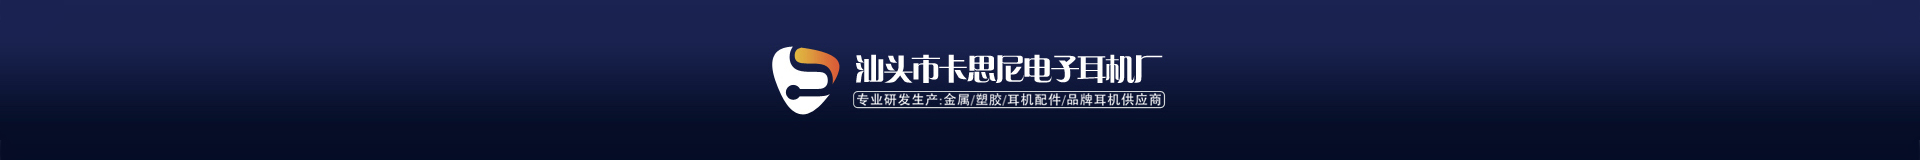 香港雅乐电子科技有限公司